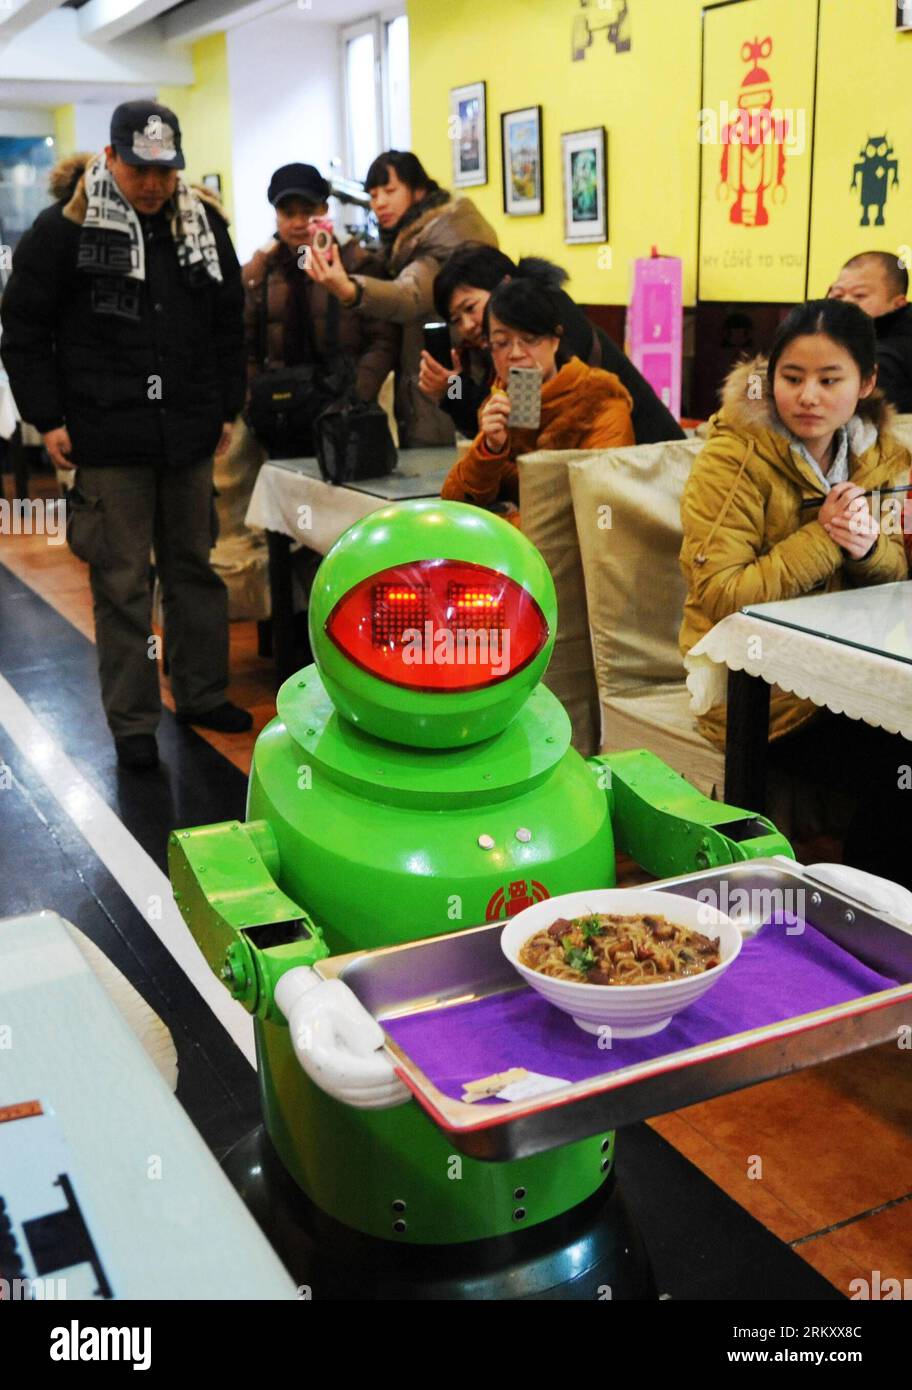 Bildnummer: 59103148 Datum: 18.01.2013 Copyright: imago/Xinhua (130118) -- HARBIN, 18 gennaio 2013 (Xinhua) -- Un robot serve piatti in un ristorante a tema robot a Harbin, capitale della provincia di Heilongjiang della Cina nord-orientale, 18 gennaio 2013. Aperto nel giugno del 2012, il ristorante ha guadagnato fama utilizzando un totale di 20 robot per cucinare i pasti, consegnare i piatti e salutare i clienti. (Xinhua/Wang Jianwei) (zc) CHINA-HEILONGJIANG-HARBIN-ROBOT THEMED RESTAURANT (CN) PUBLICATIONxNOTxINxCHN Gesellschaft Gastronomie Erlebnisgastronomie kurios Komik Roboter Kellner Fotostory x0x xds 2013 hoch premiumd 591 Foto Stock